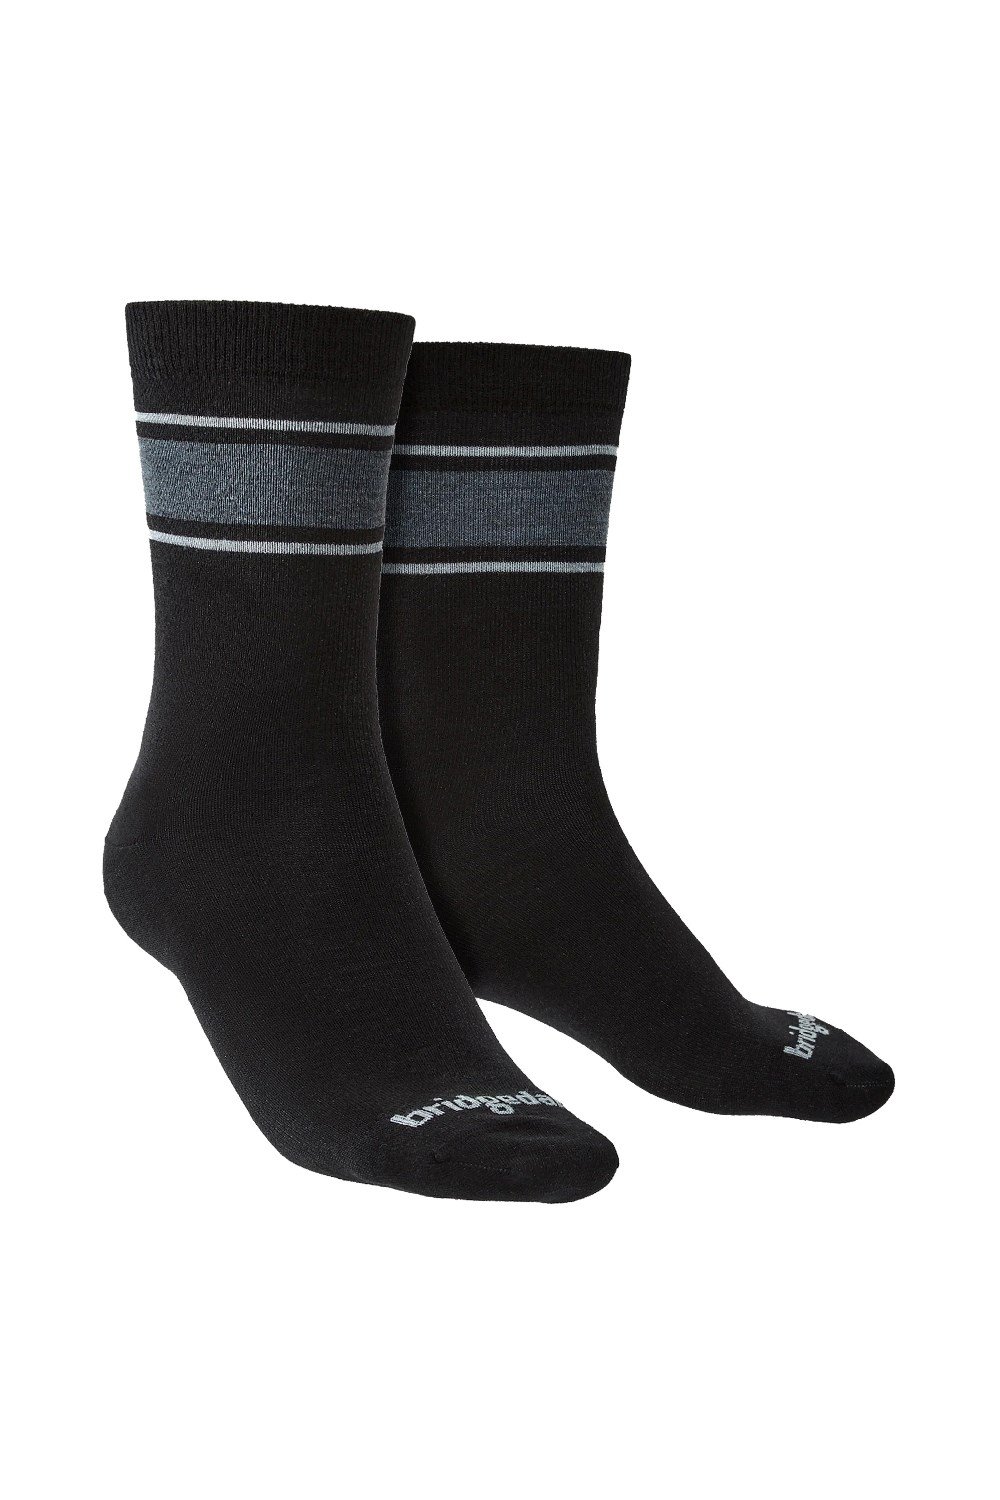 Mens Liner Base Layer Merino Boot Socks